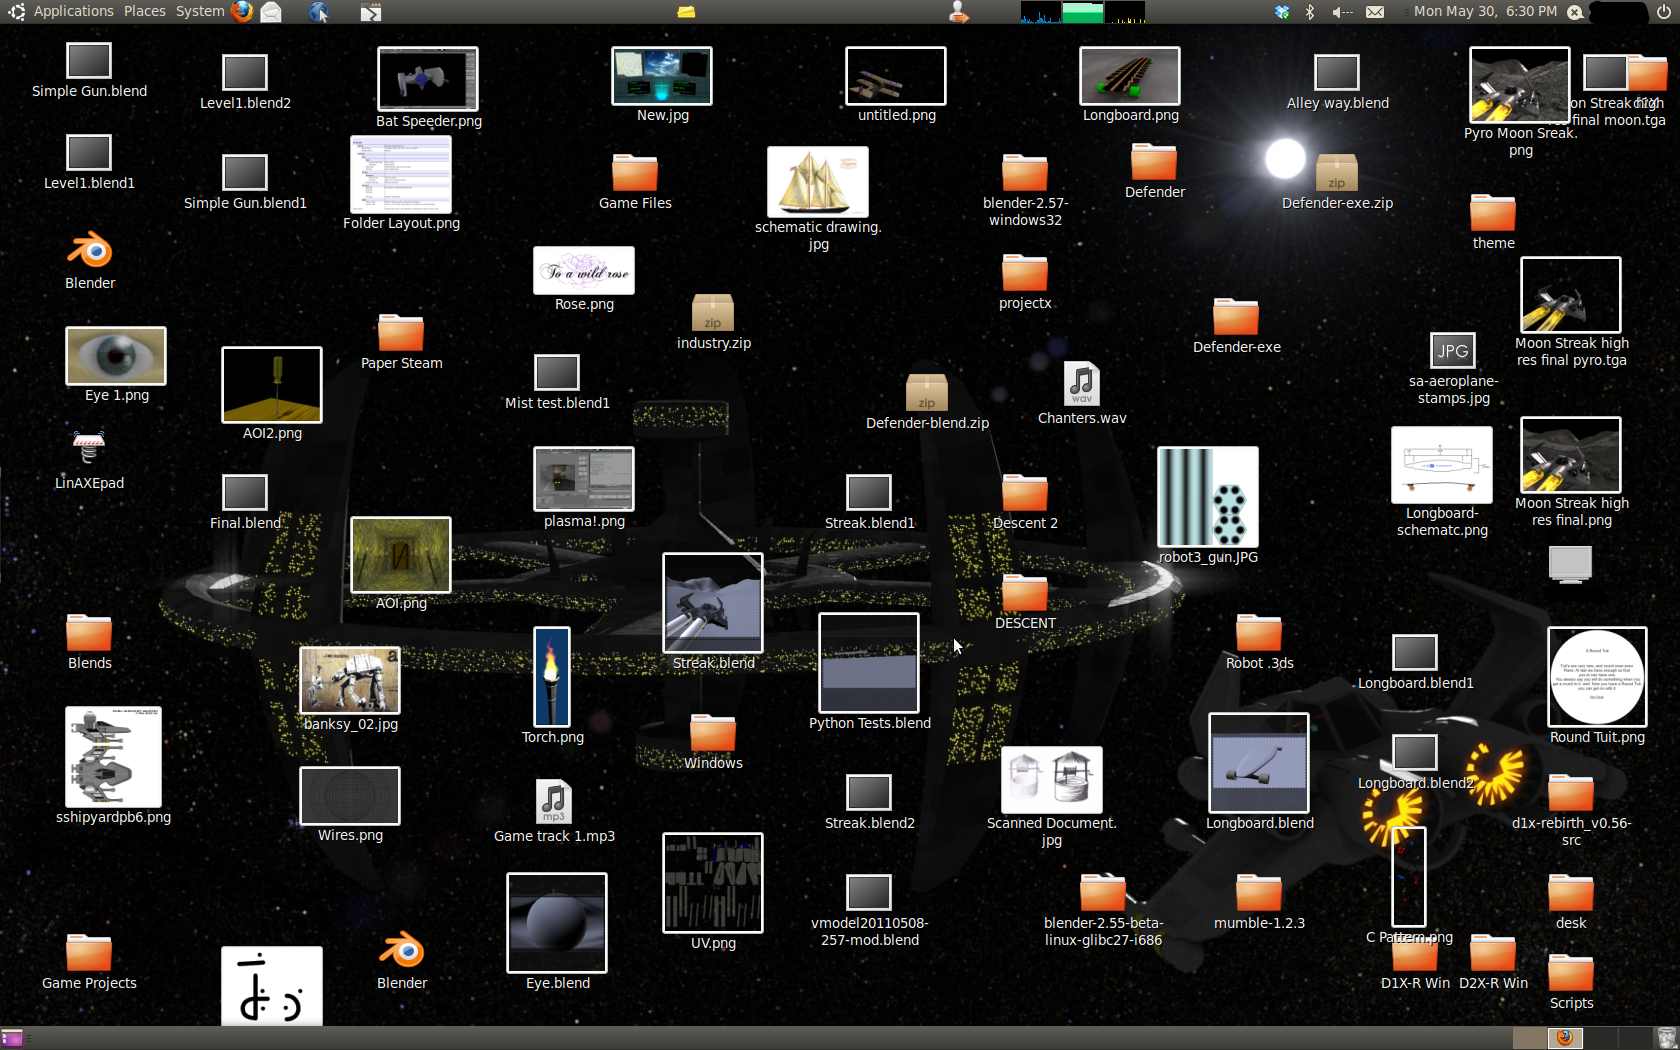 Messy desktop galore